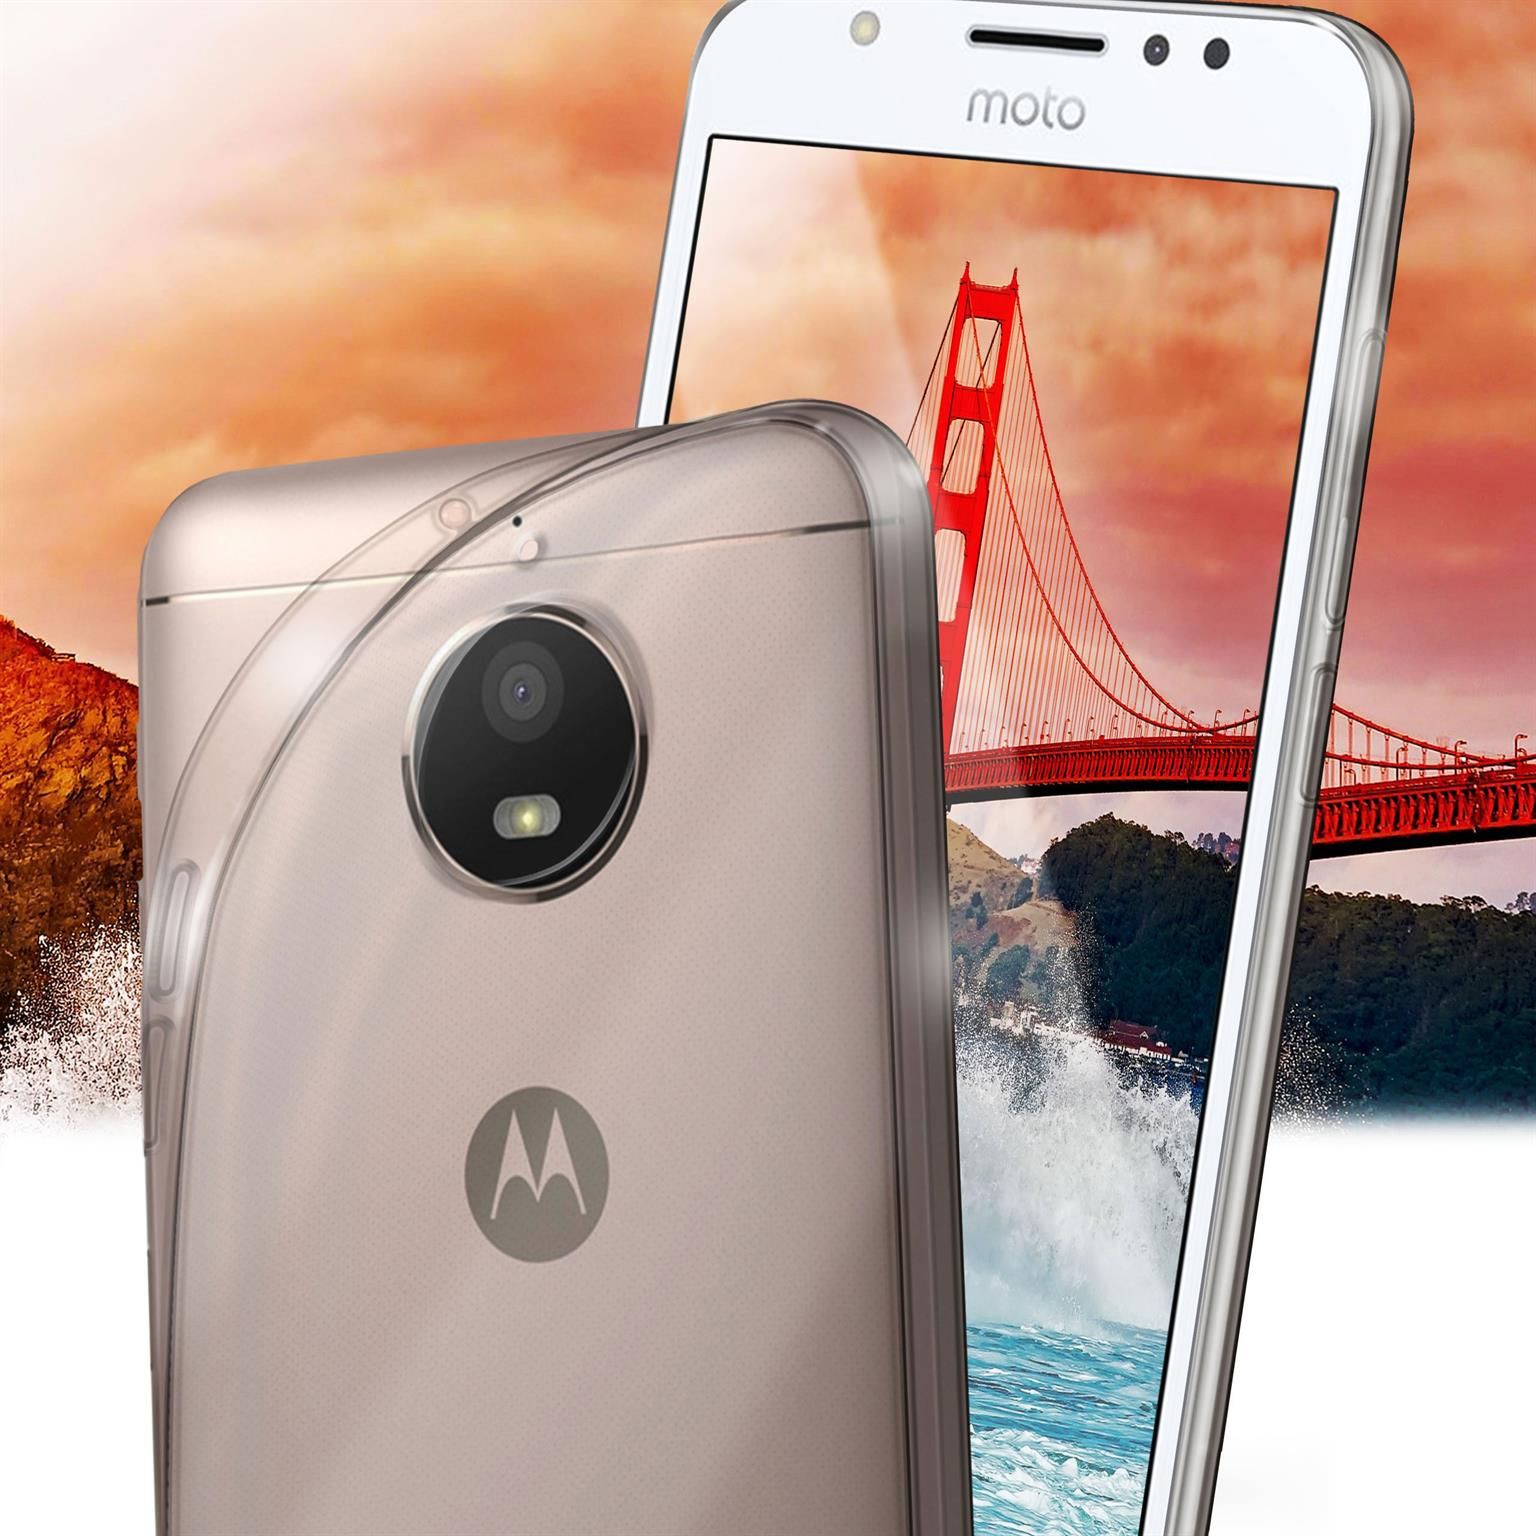 Backcover, MOEX Case, Moto E4, Crystal-Clear Aero Motorola,